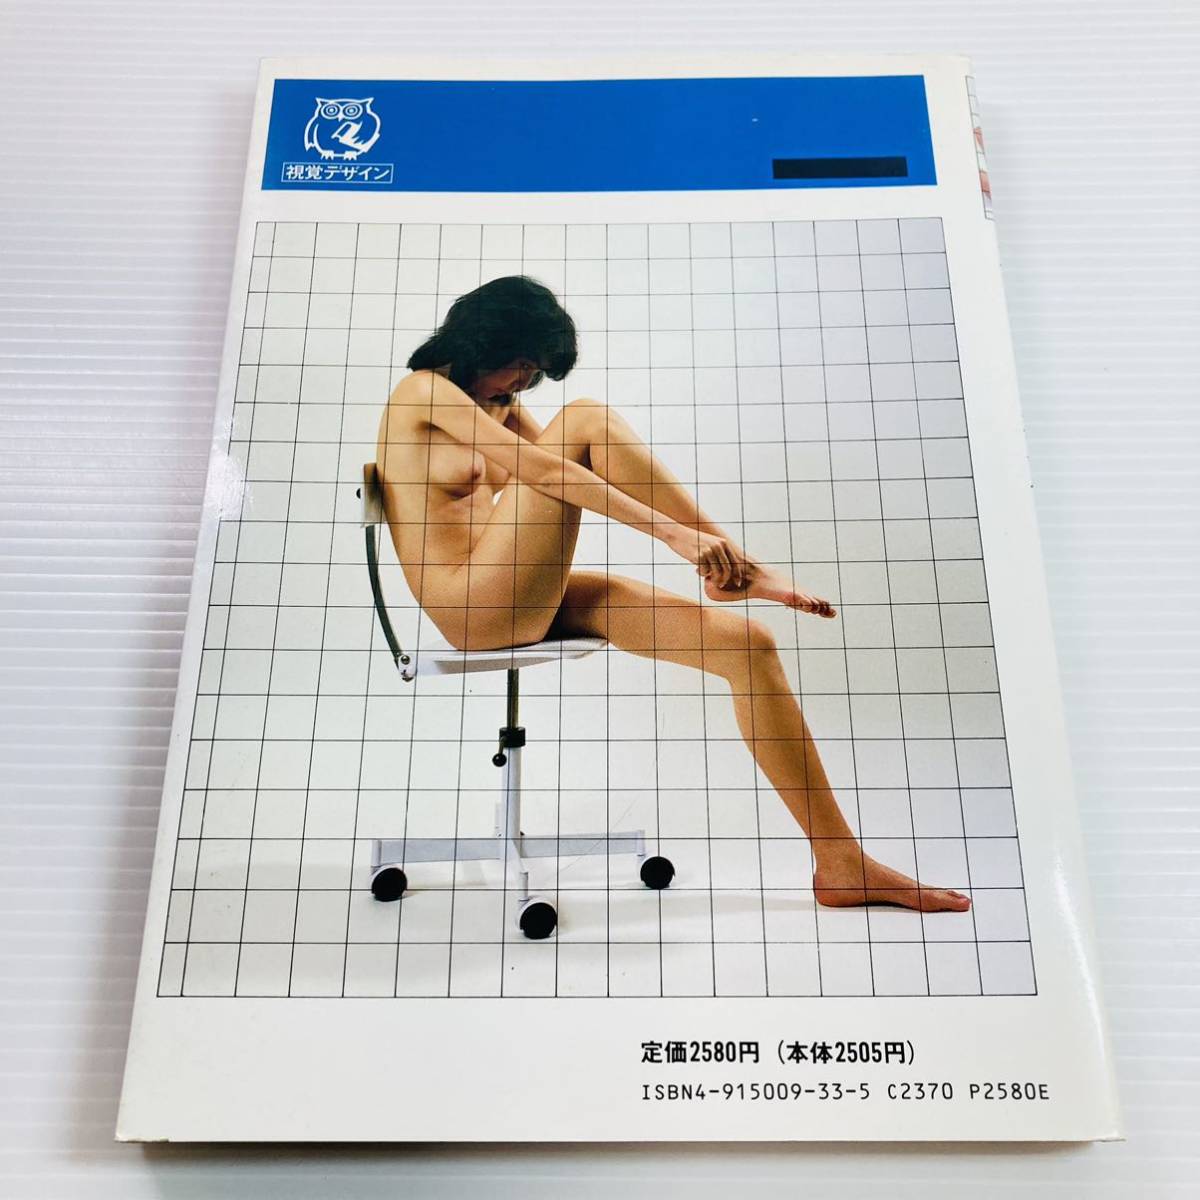 裸婦の基本ポーズ みみずく アートシリーズ 視覚デザイン研究所_画像2